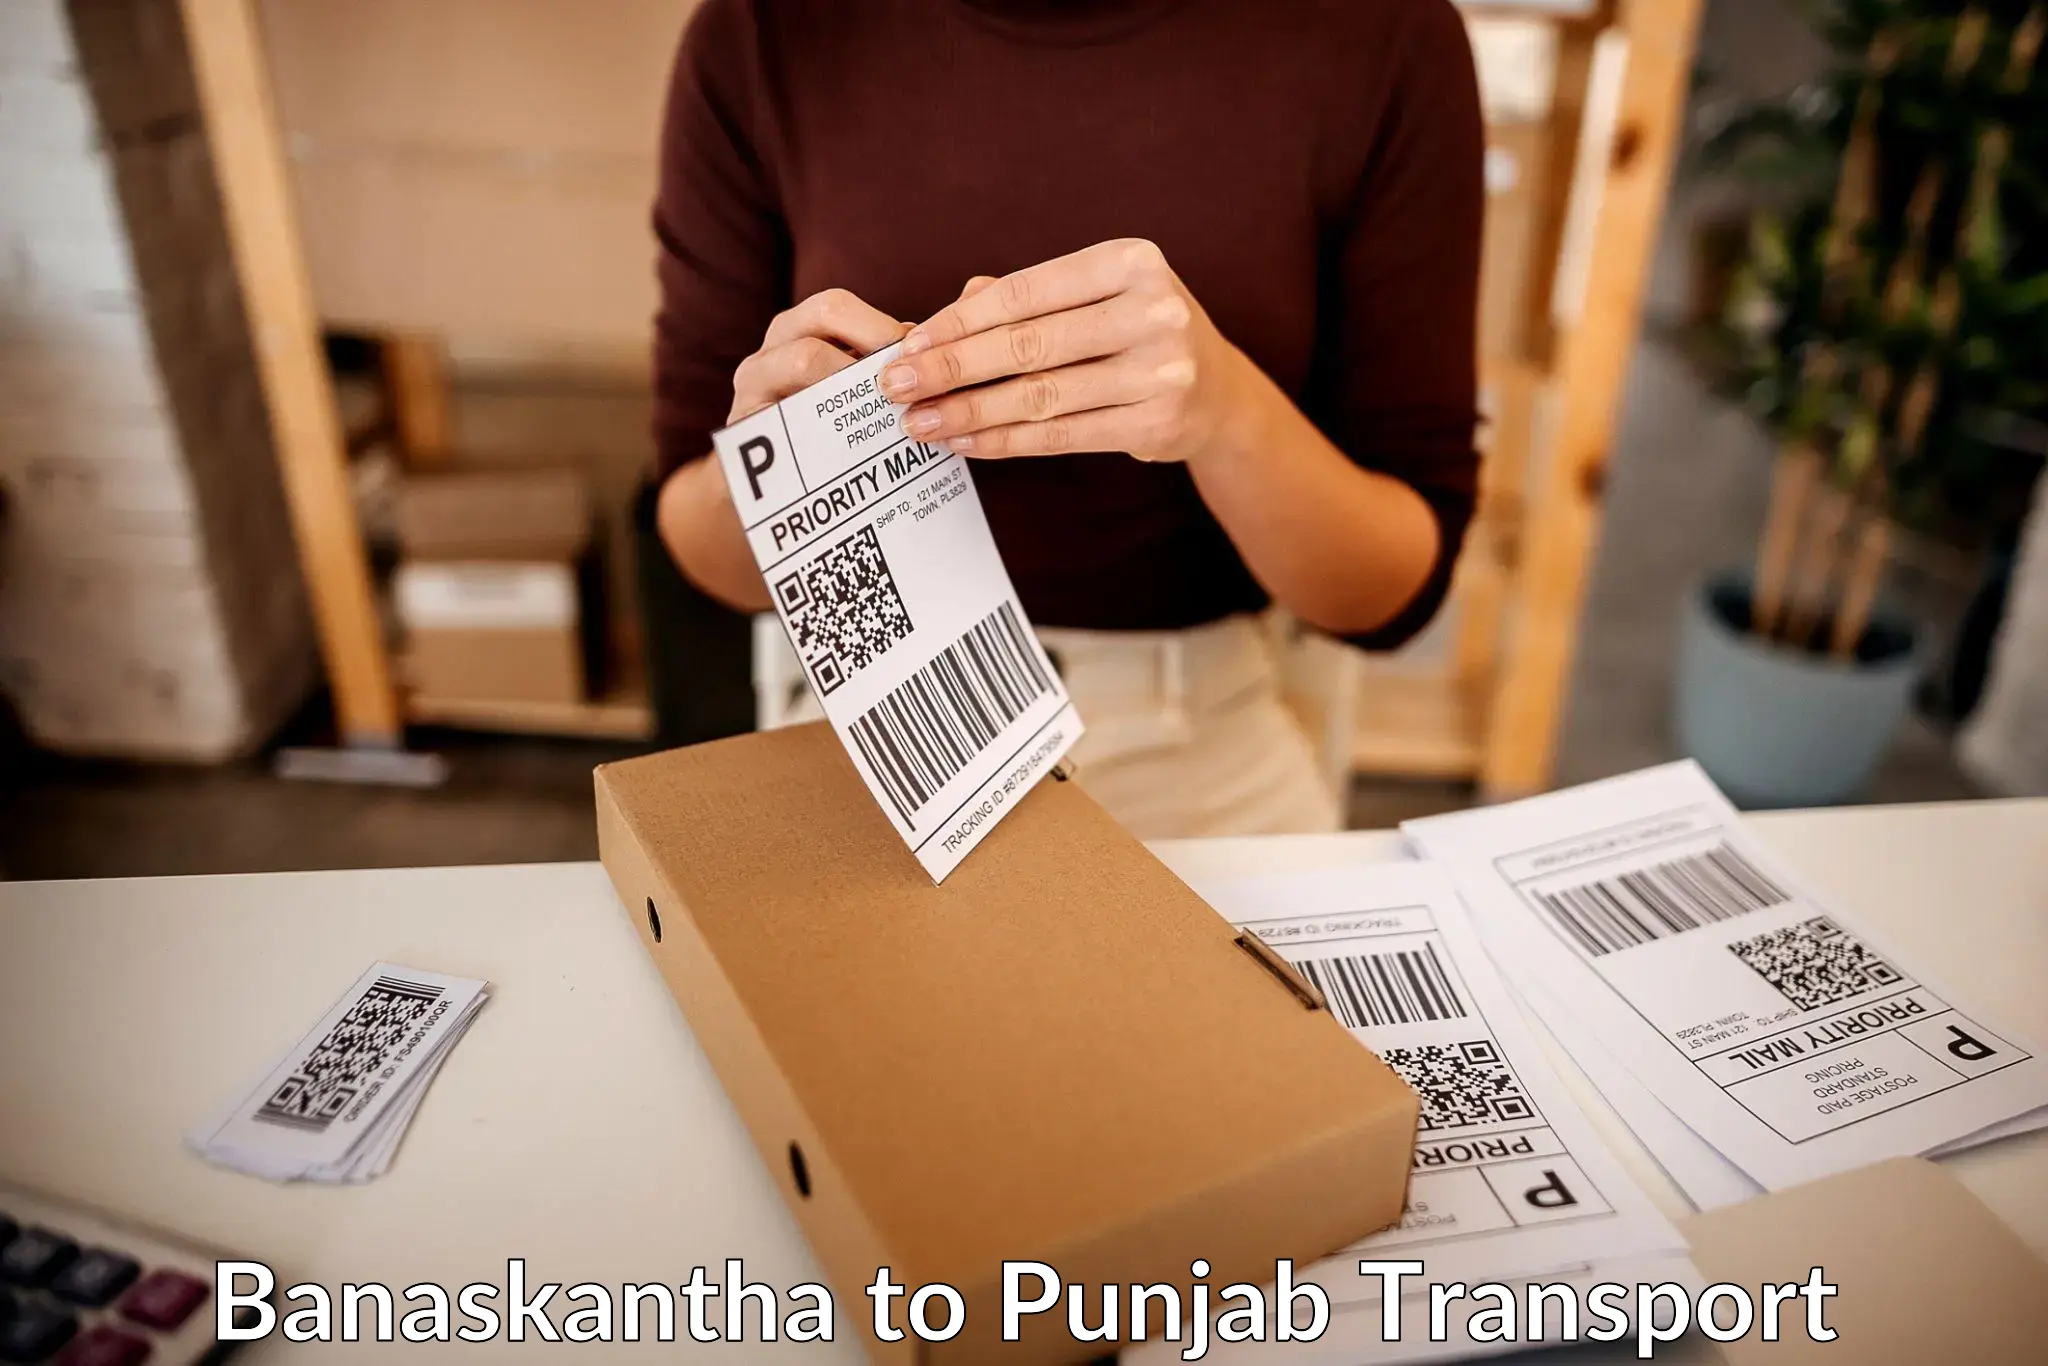 Shipping partner Banaskantha to Ropar